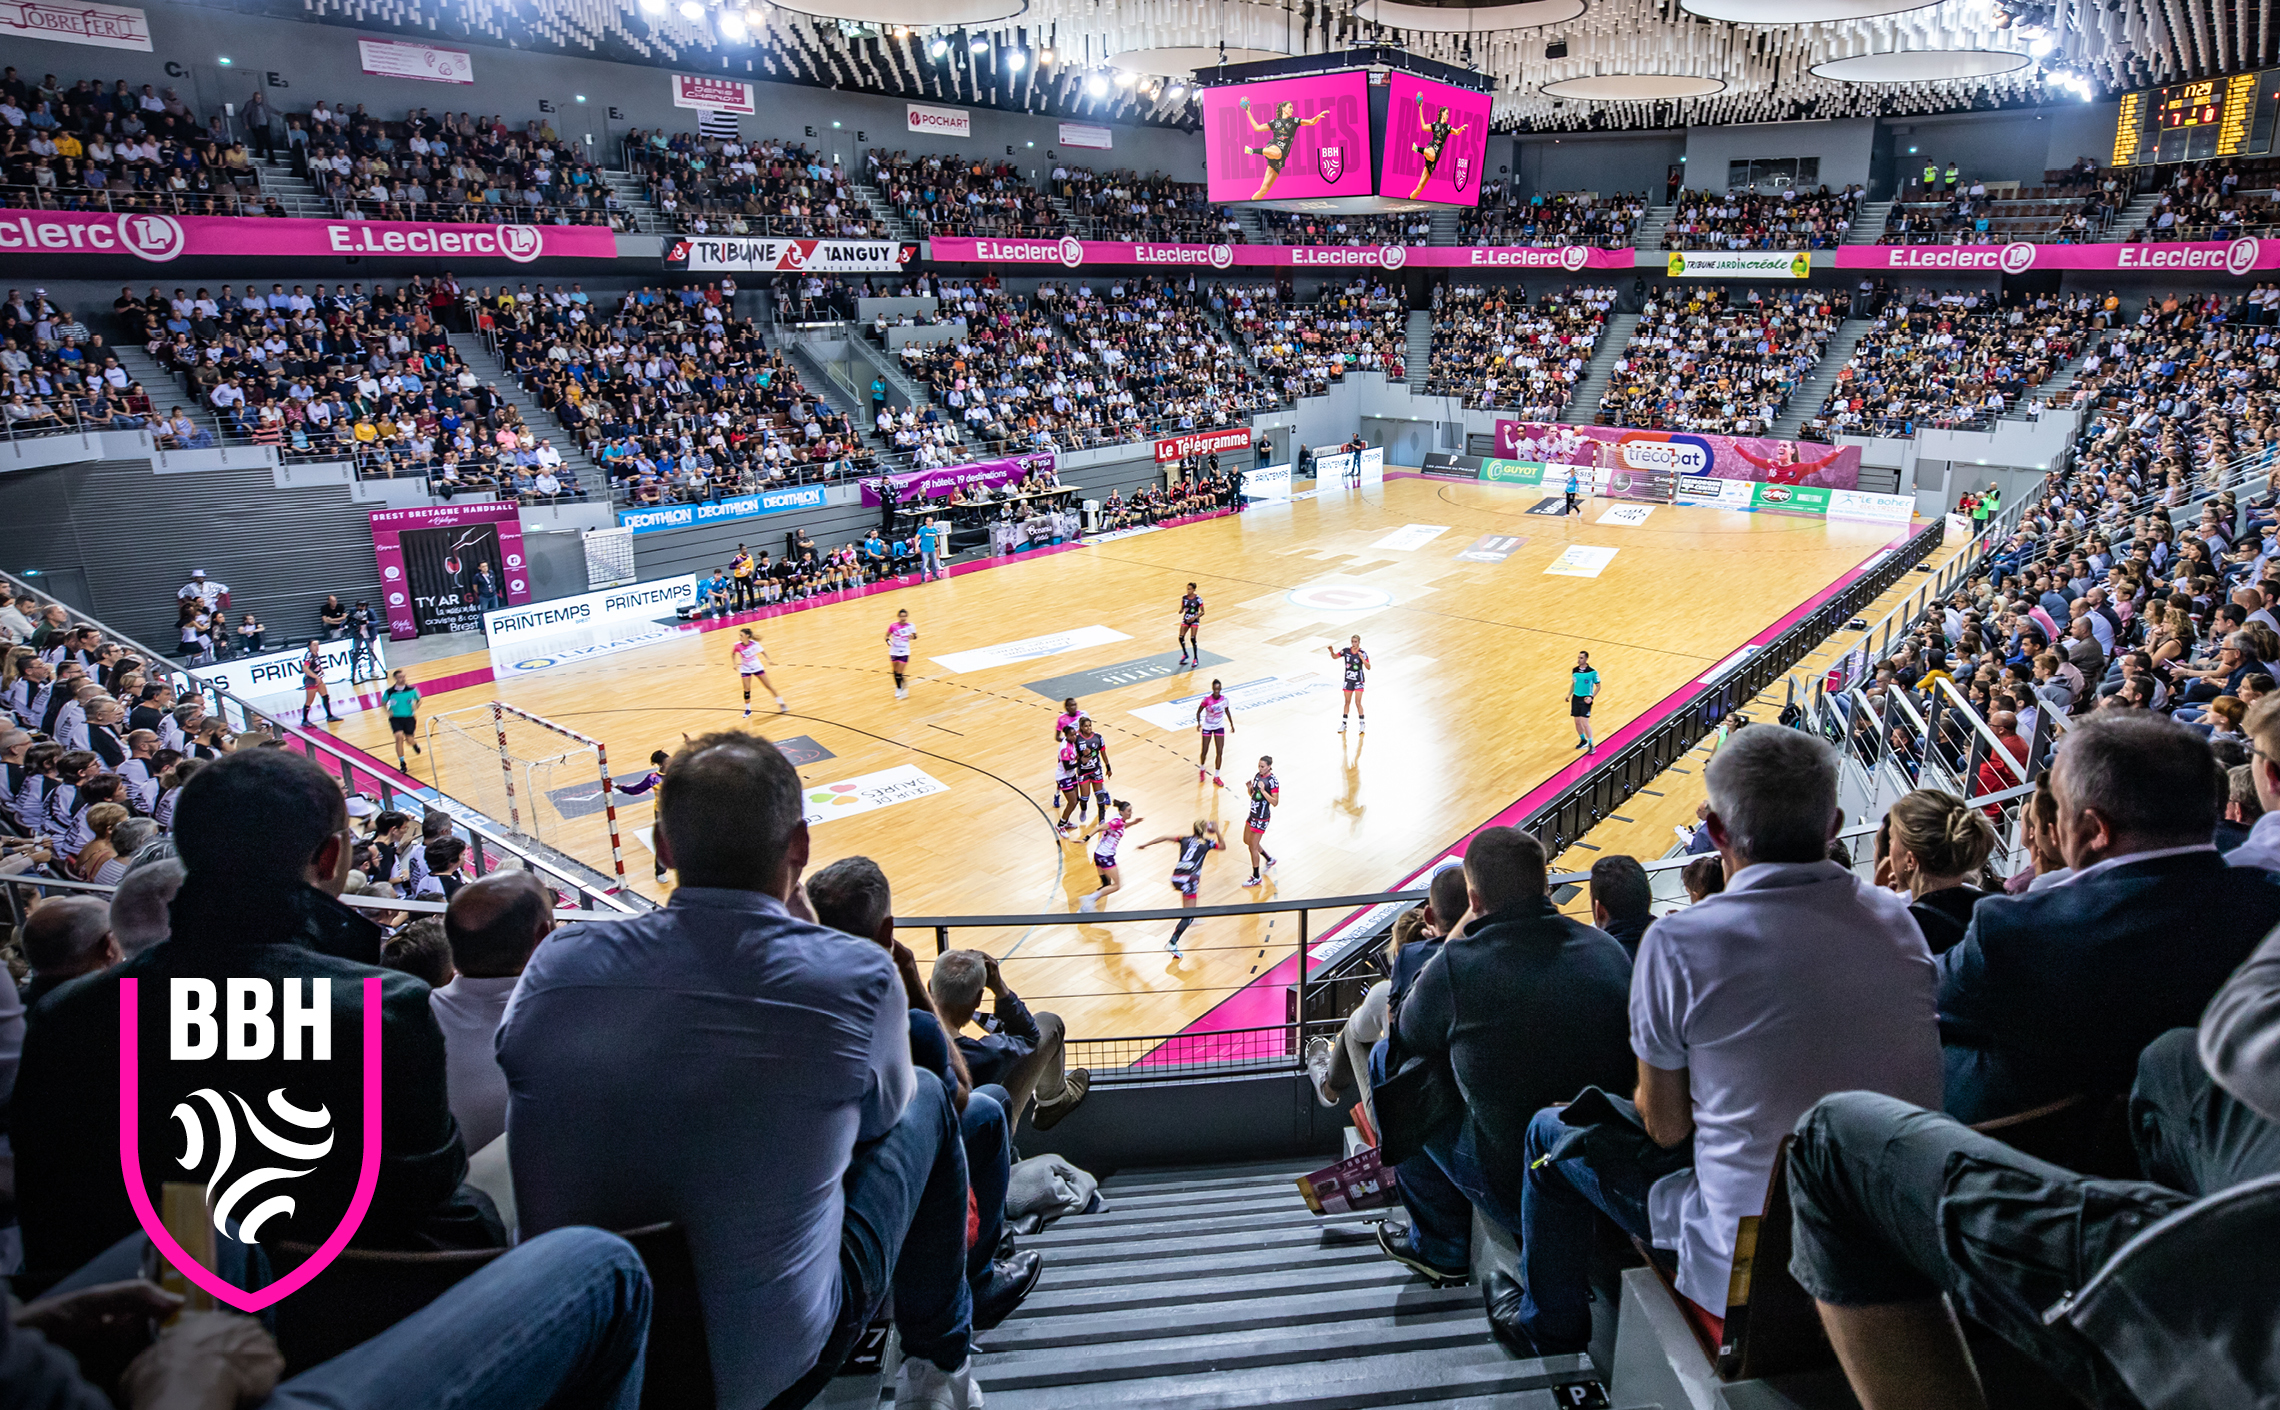 stade brest arena handball branding communication club sport